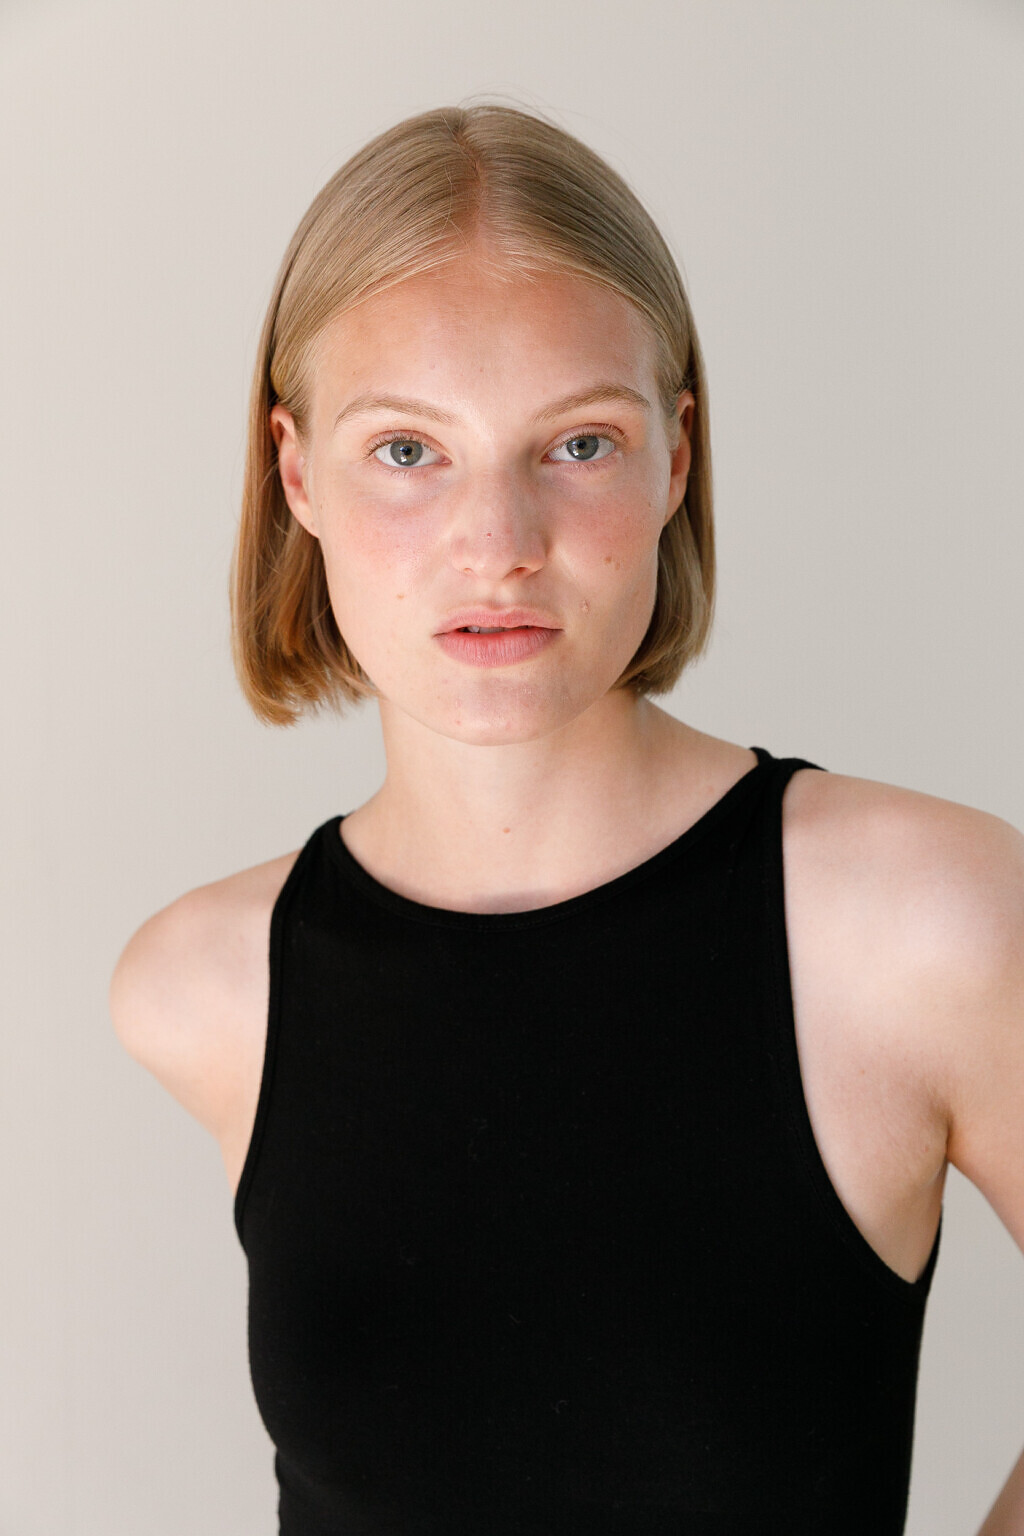 Nana Skovgaard - Unique Models